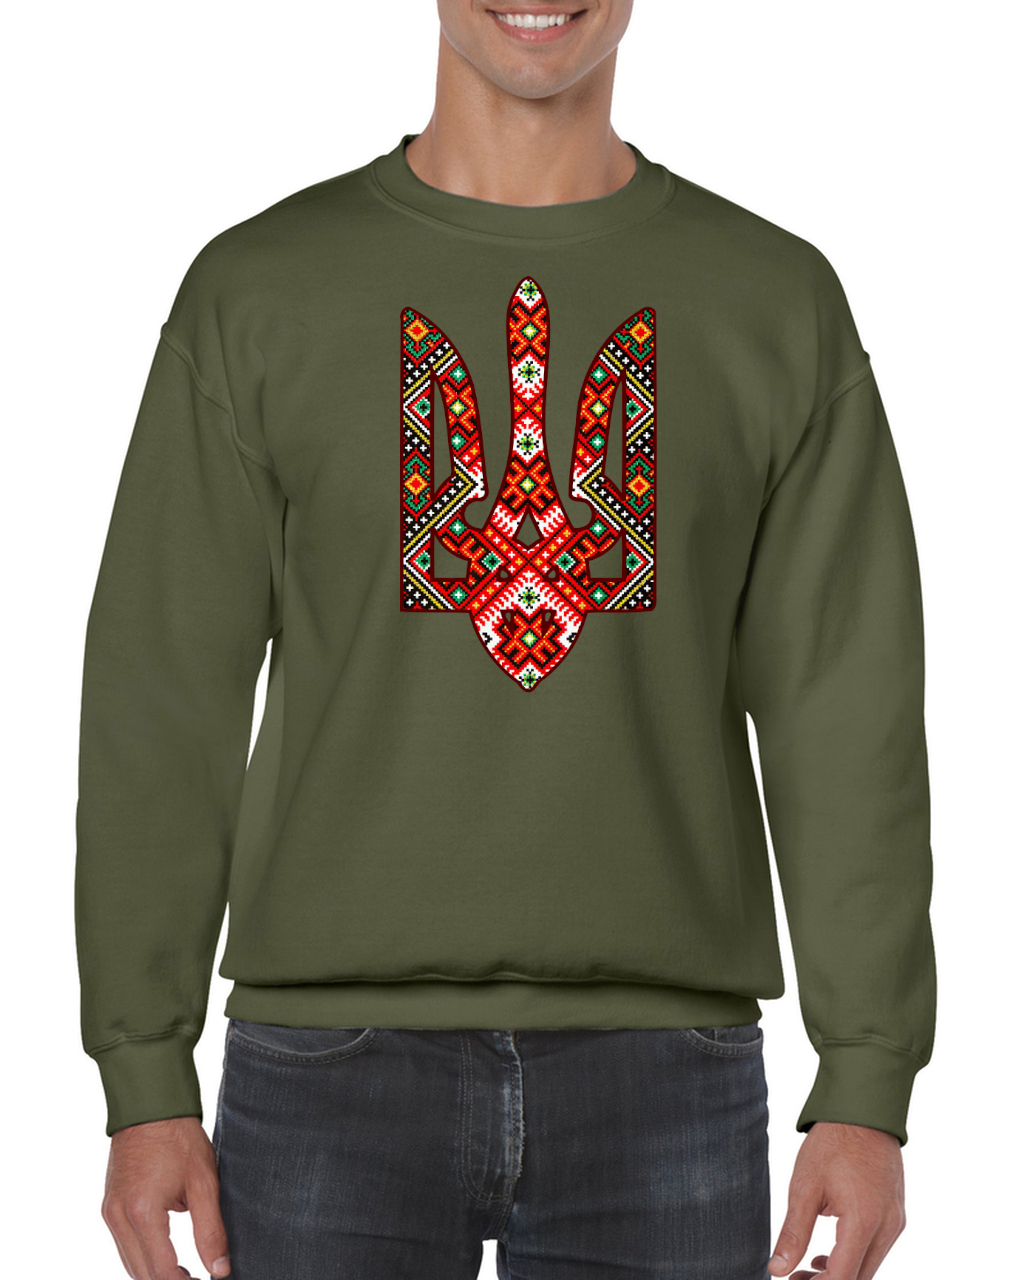 Adult unisex sweatshirt "Etno Tryzub"